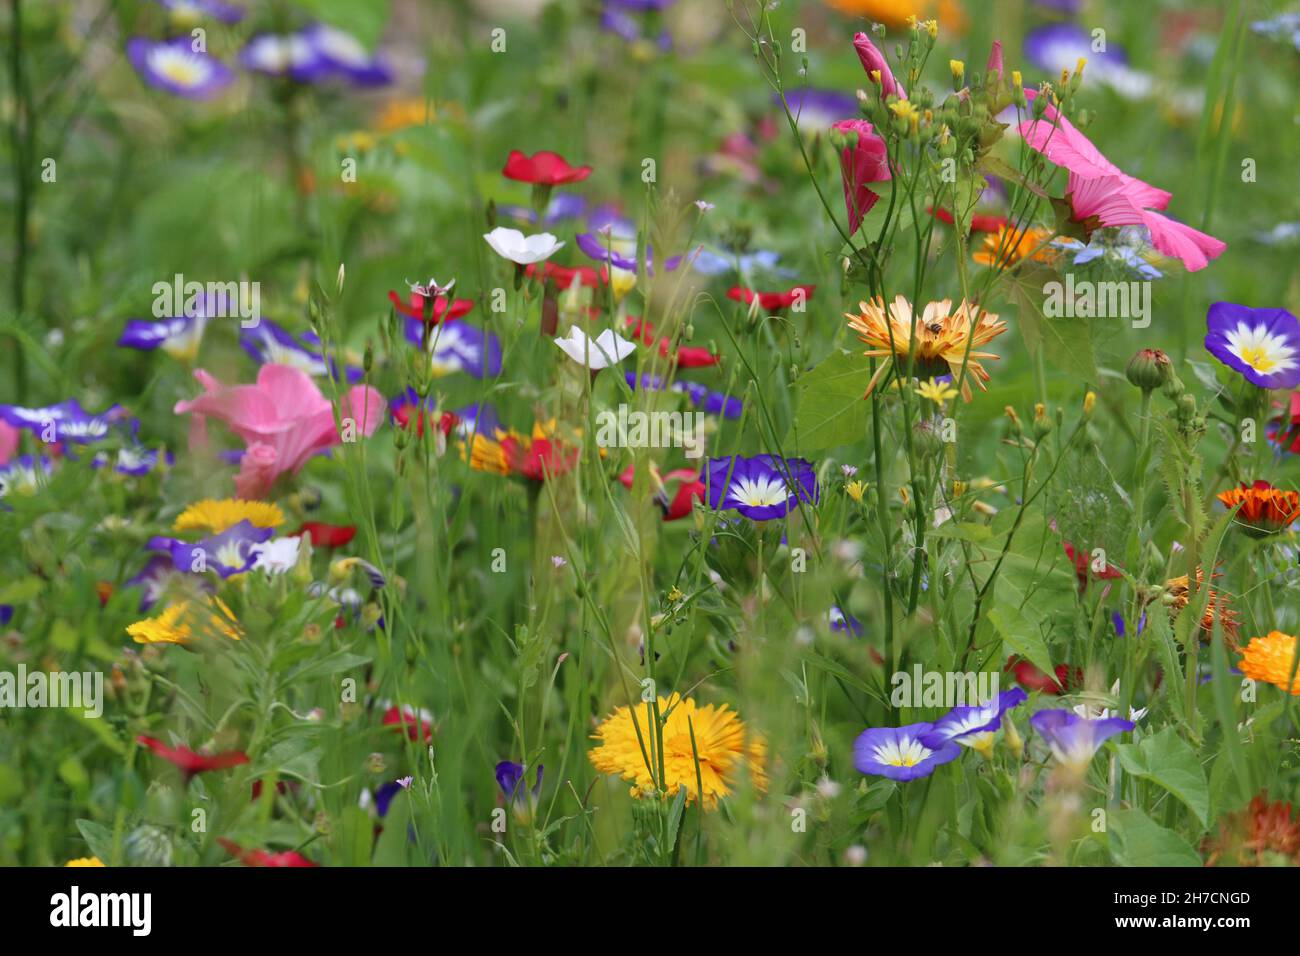 Ce qu'on appelle un pré de fleurs sauvages d'un mélange d'espèces exotiques non indigènes, l'Allemagne Banque D'Images